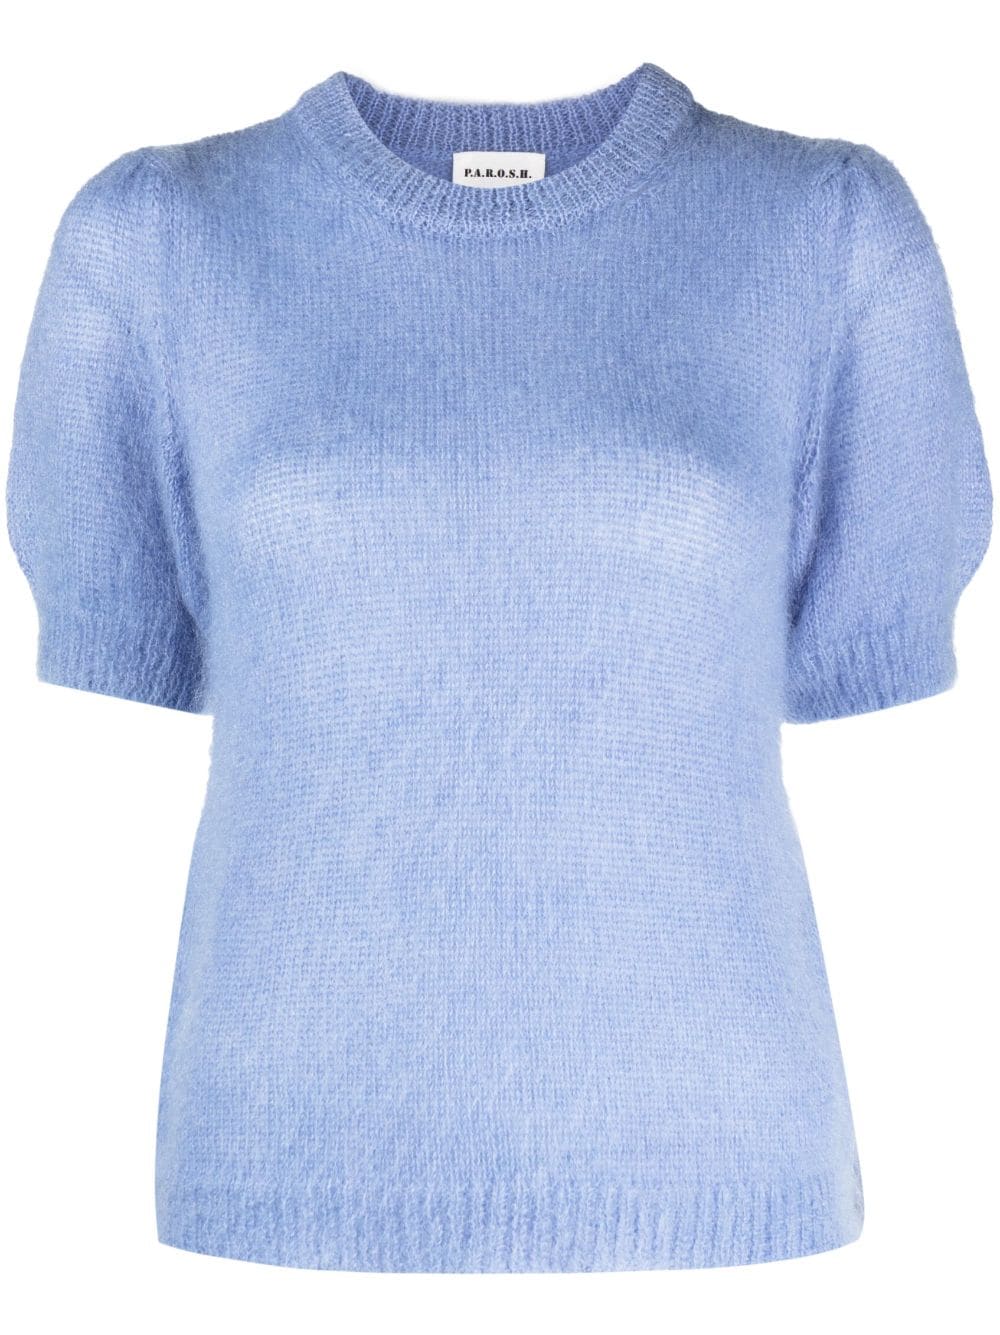 P.A.R.O.S.H. short-sleeve knitted top - Blue von P.A.R.O.S.H.